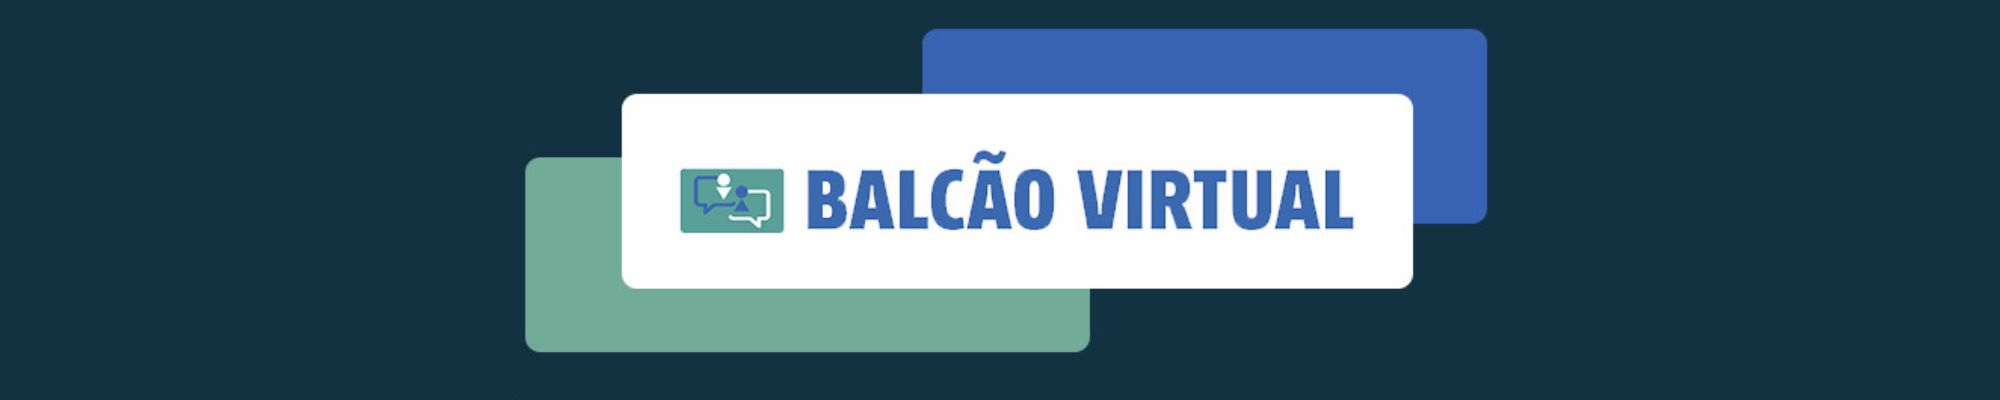 Atualização da ferramenta Balcão Virtual